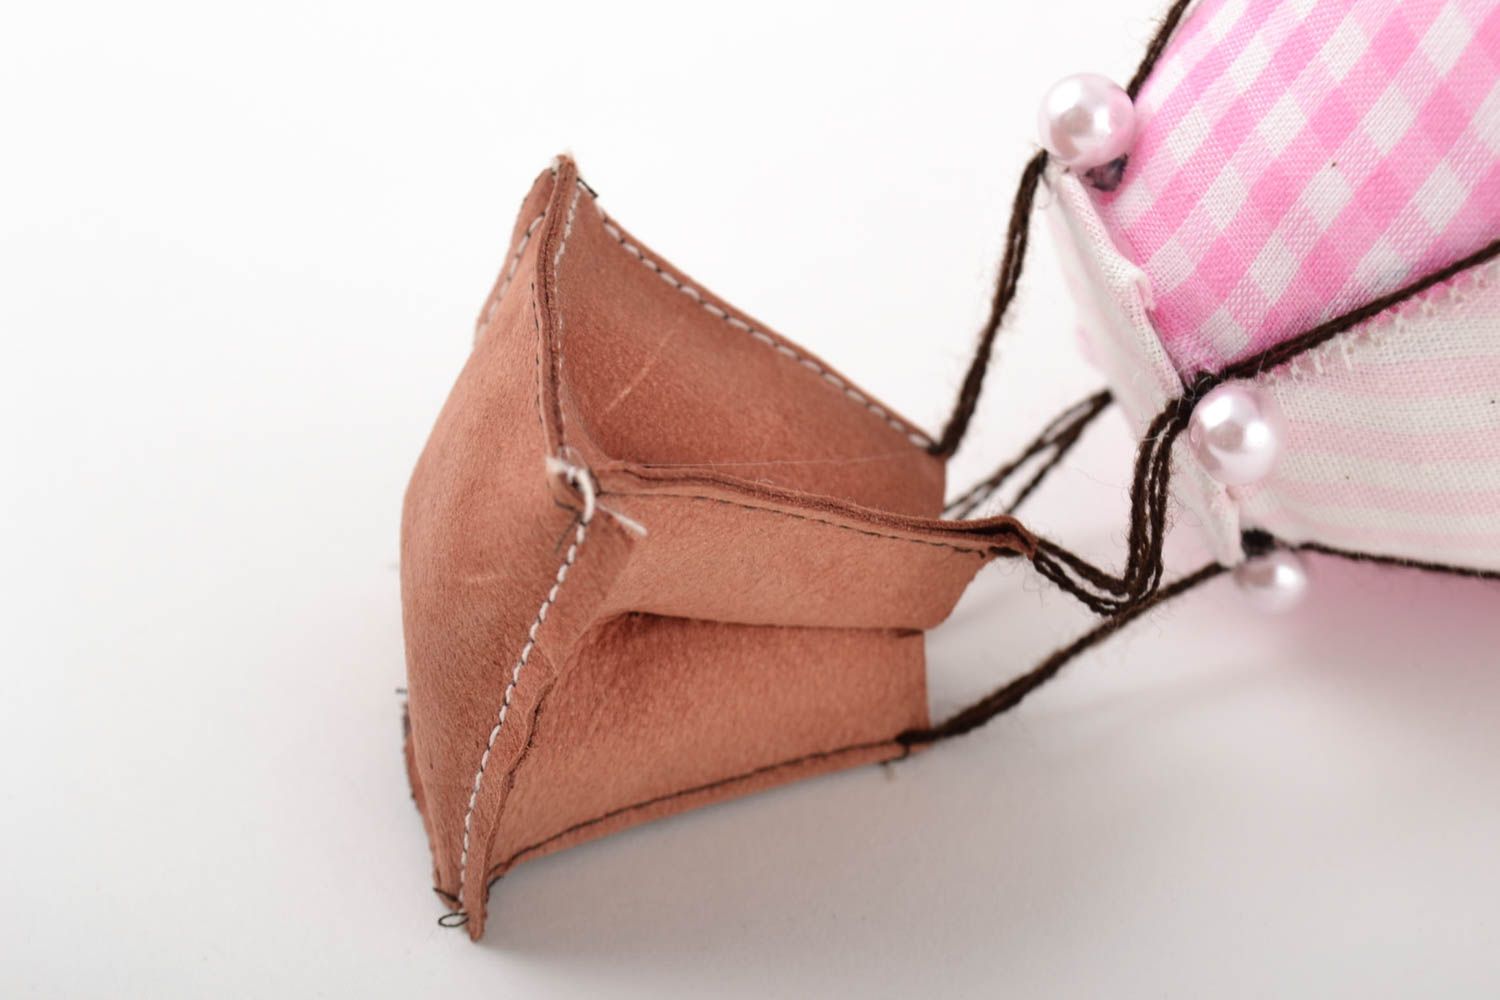 Textil Spielzeug handmade Deko Anhänger Stoff Kuscheltier Designer Geschenk rosa foto 2